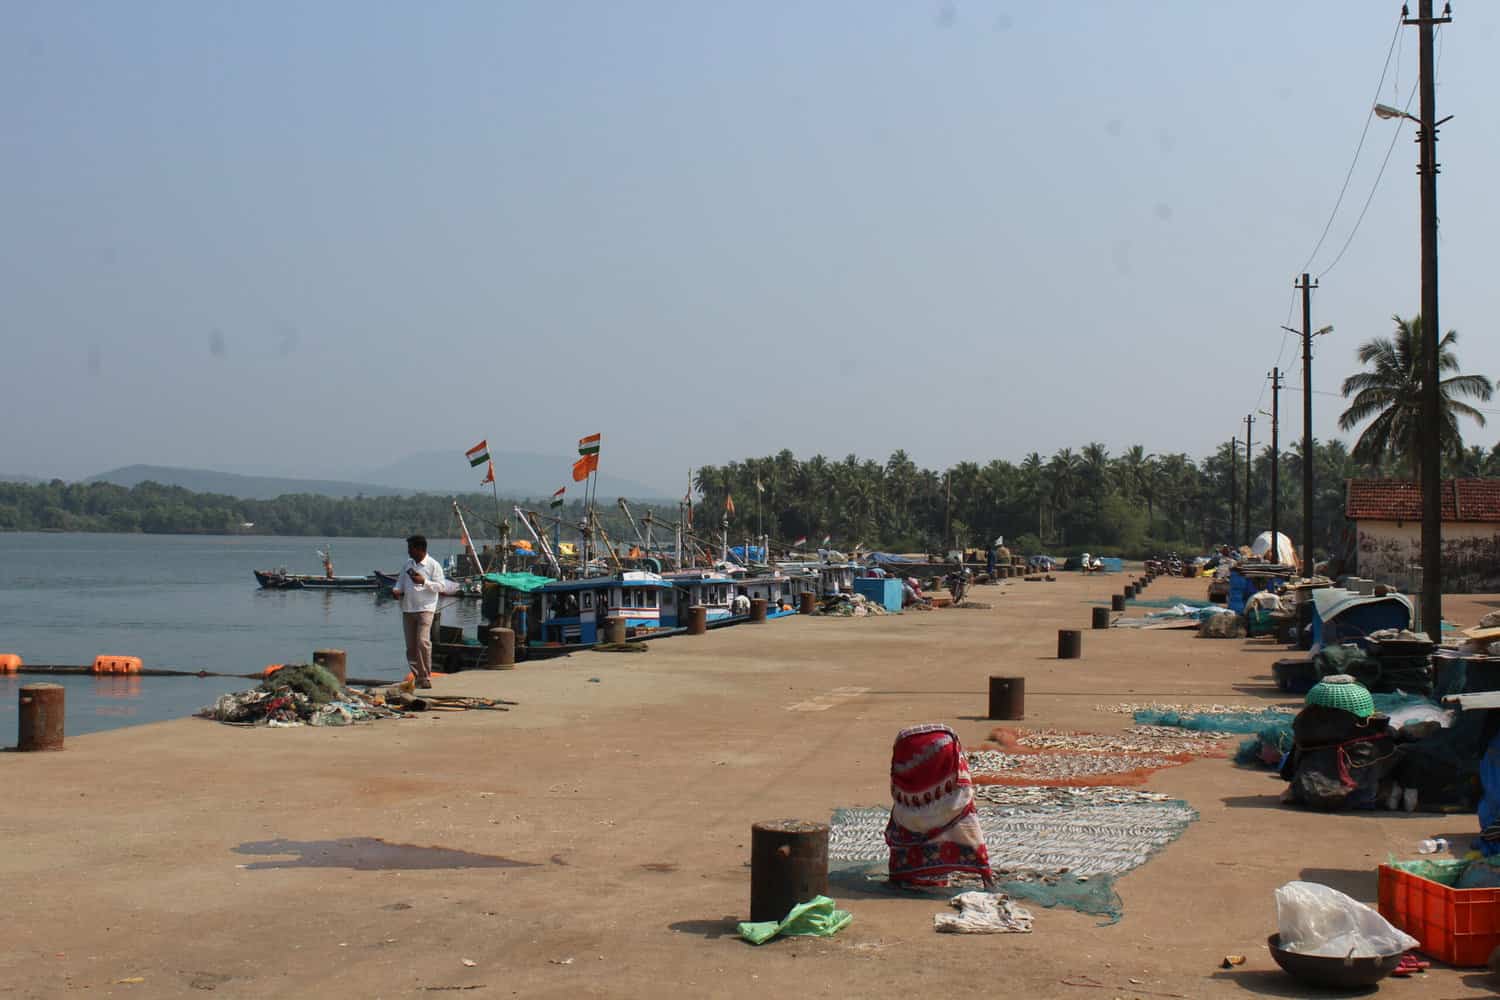 Tenginagundi fishing pier, Karnataka